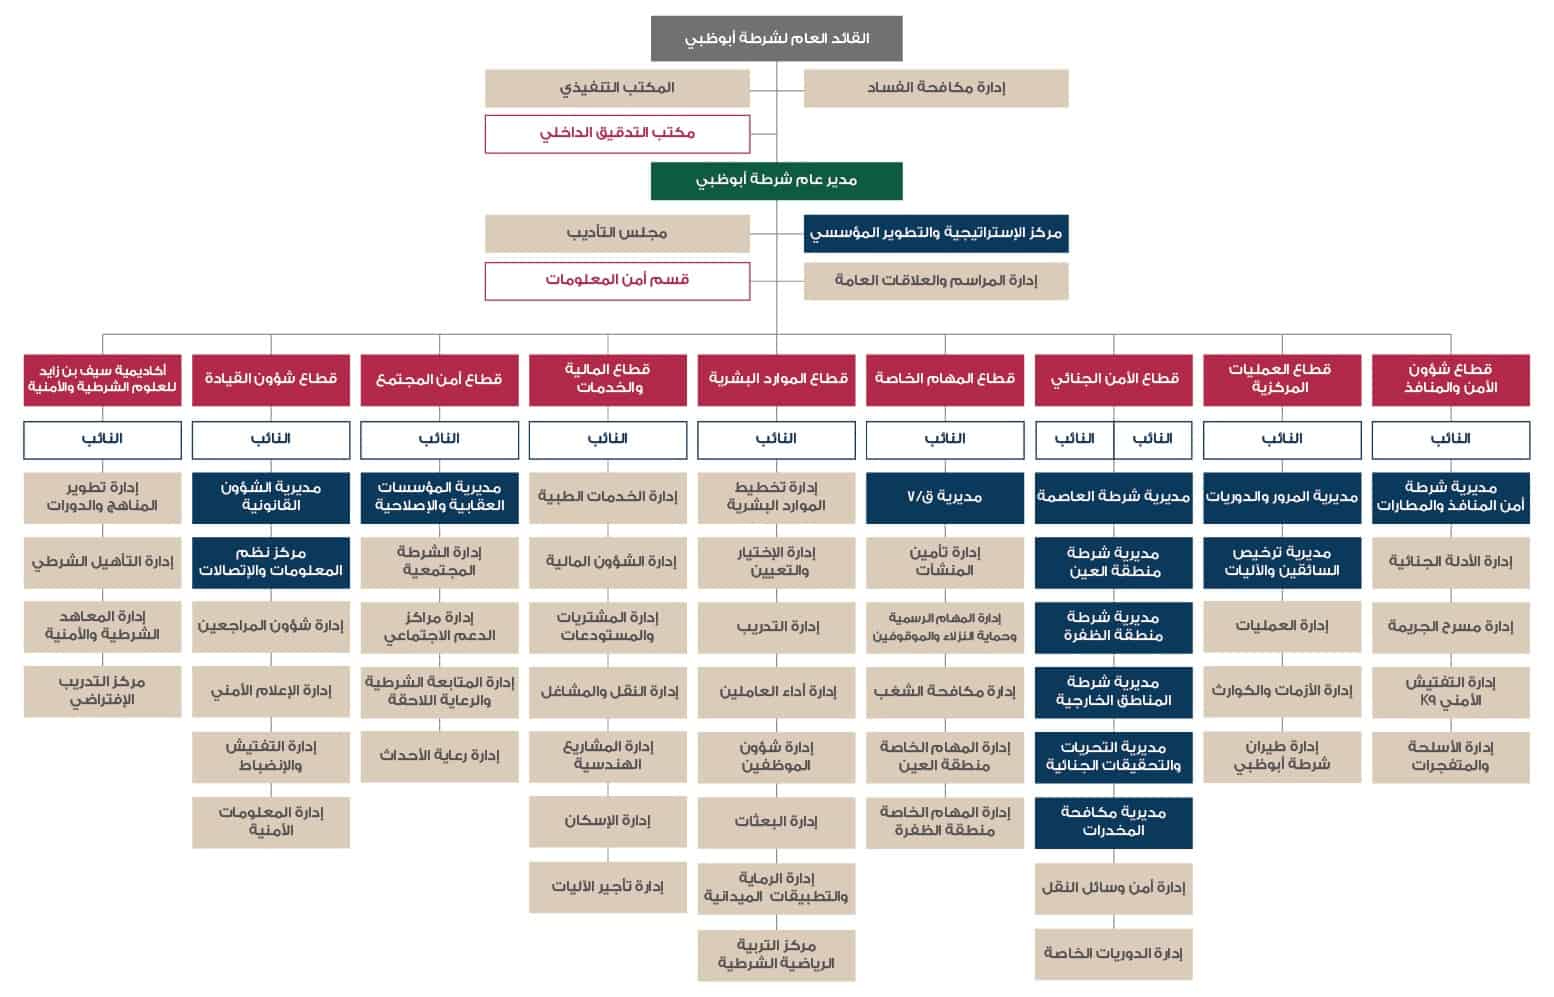 الهيكل التنظيمي لشرطة أبوظبي